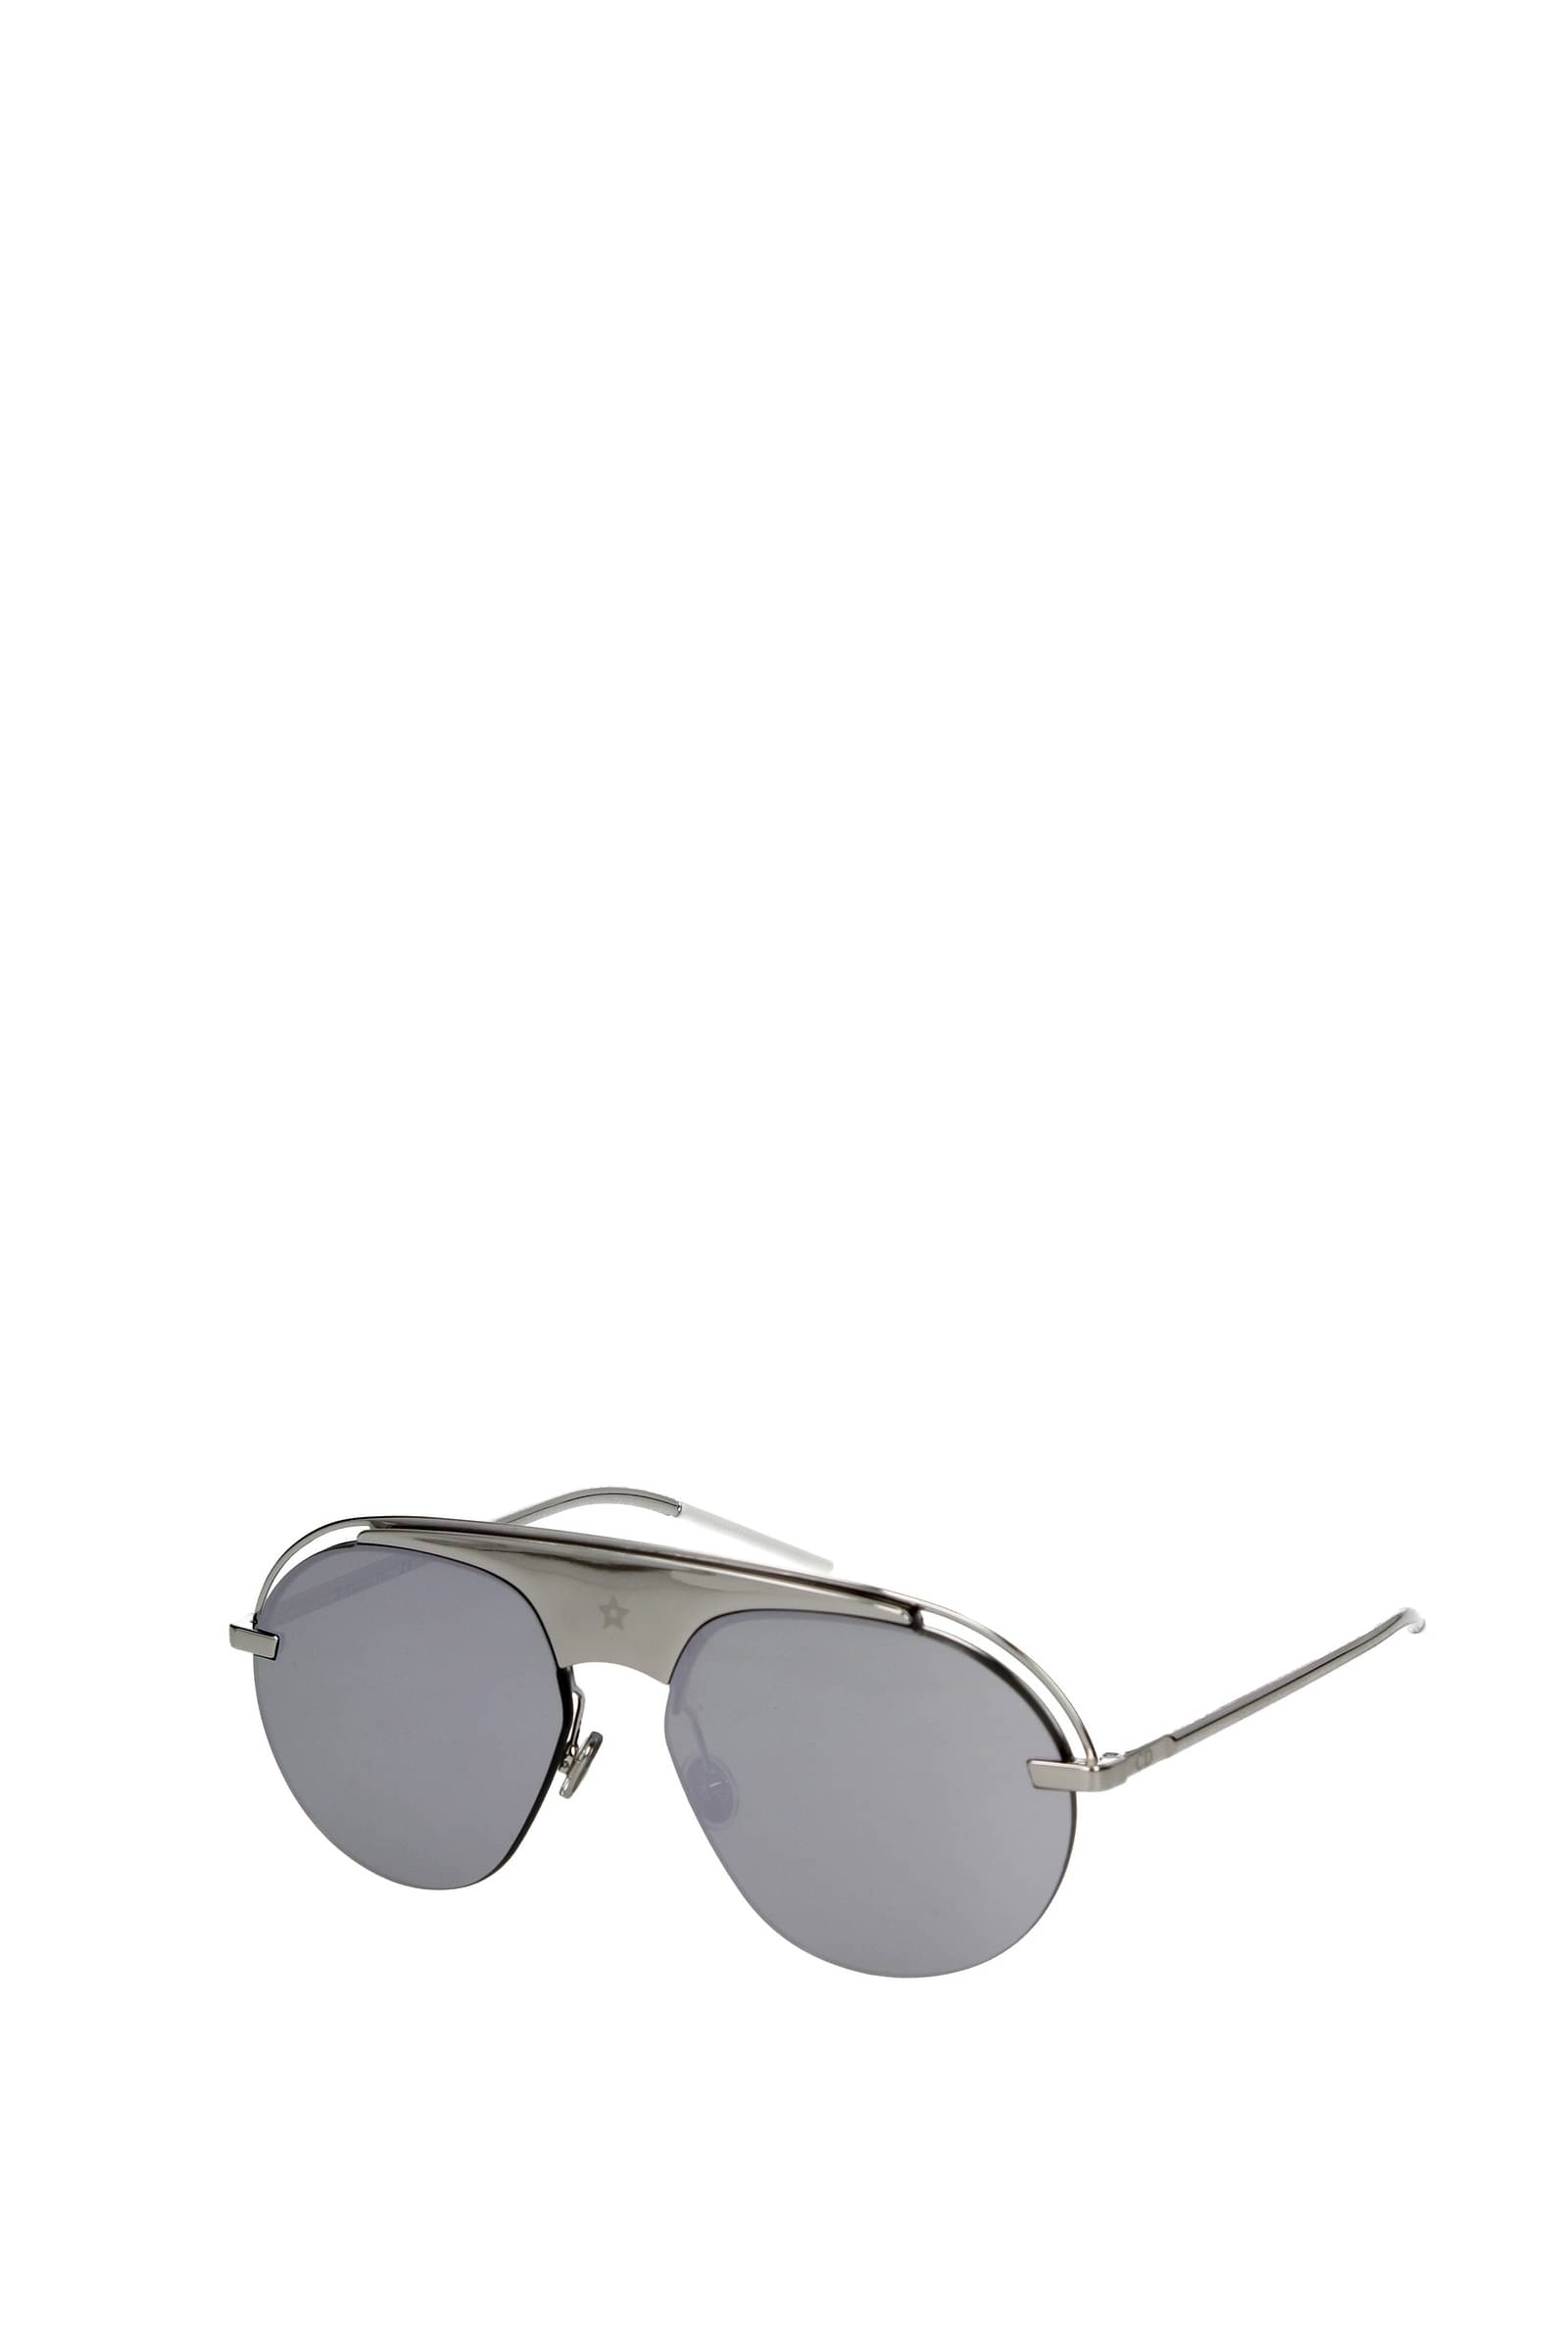 Chia sẻ hơn 64 về vintage dior sunglasses mới nhất  cdgdbentreeduvn